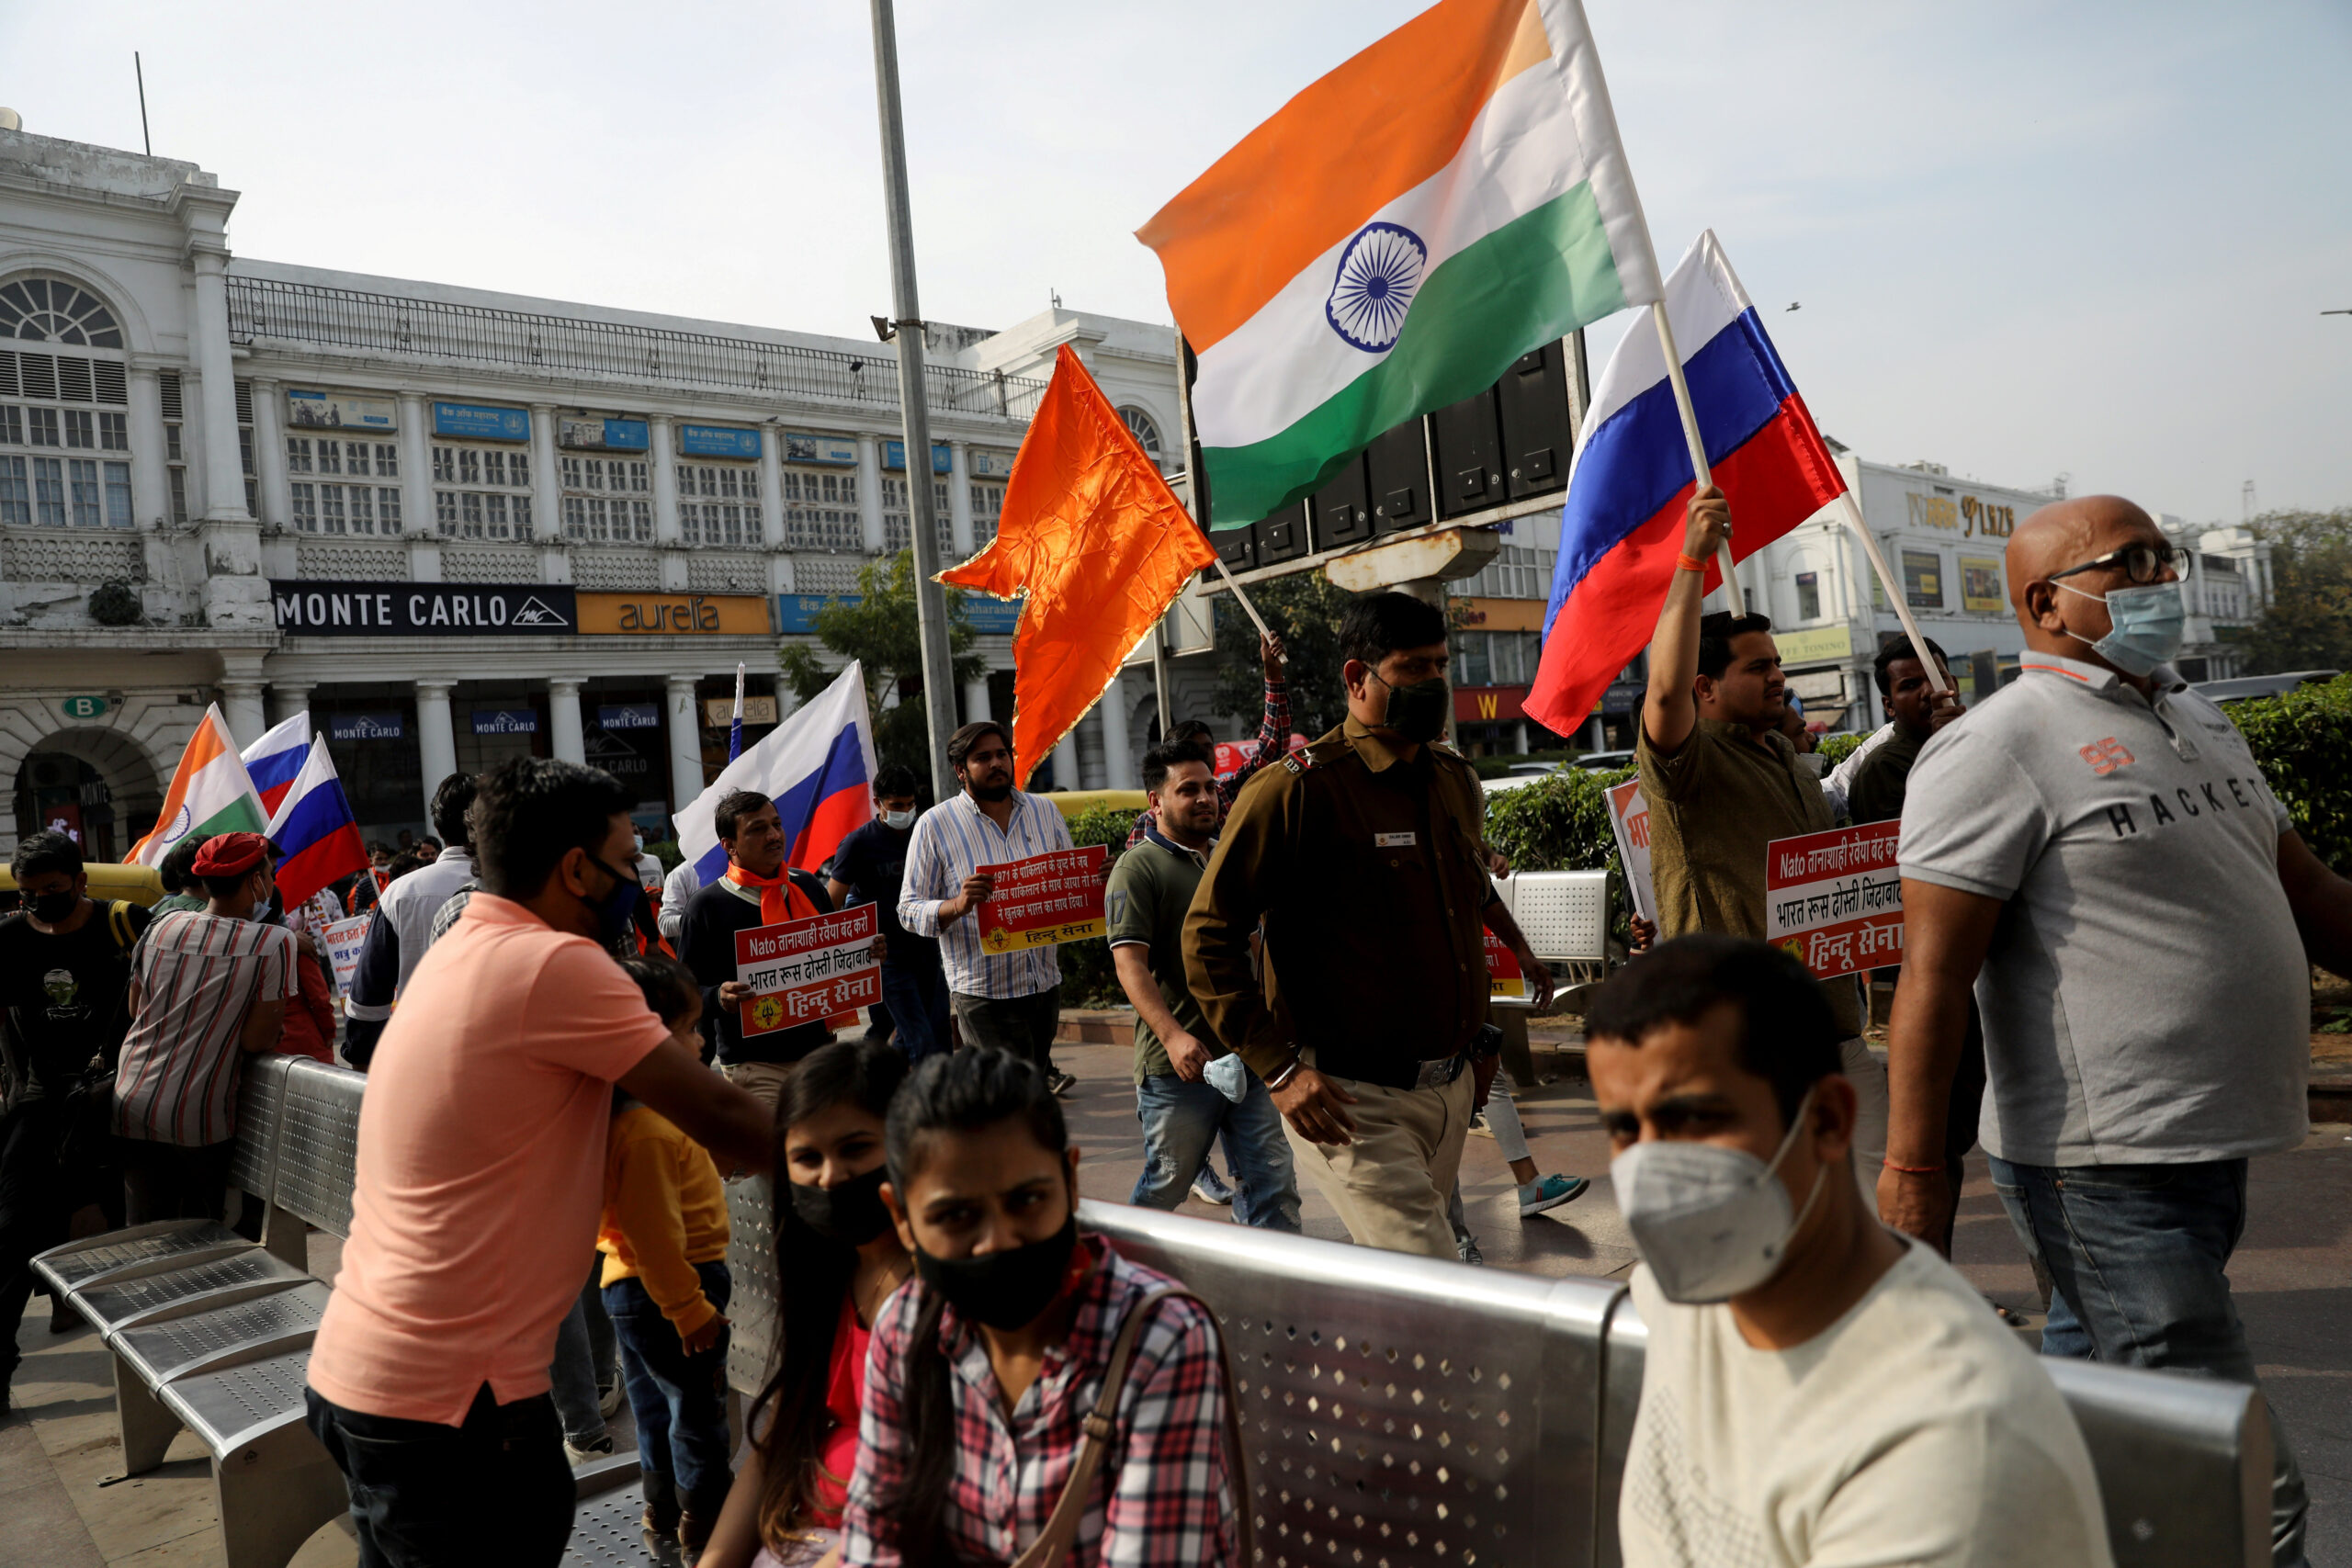 Des activistes indiens participent à une marche de soutien à la Russie, à New Delhi, en Inde. /Photo prise le 6 mars 2022/REUTERS/Anushree Fadnavis